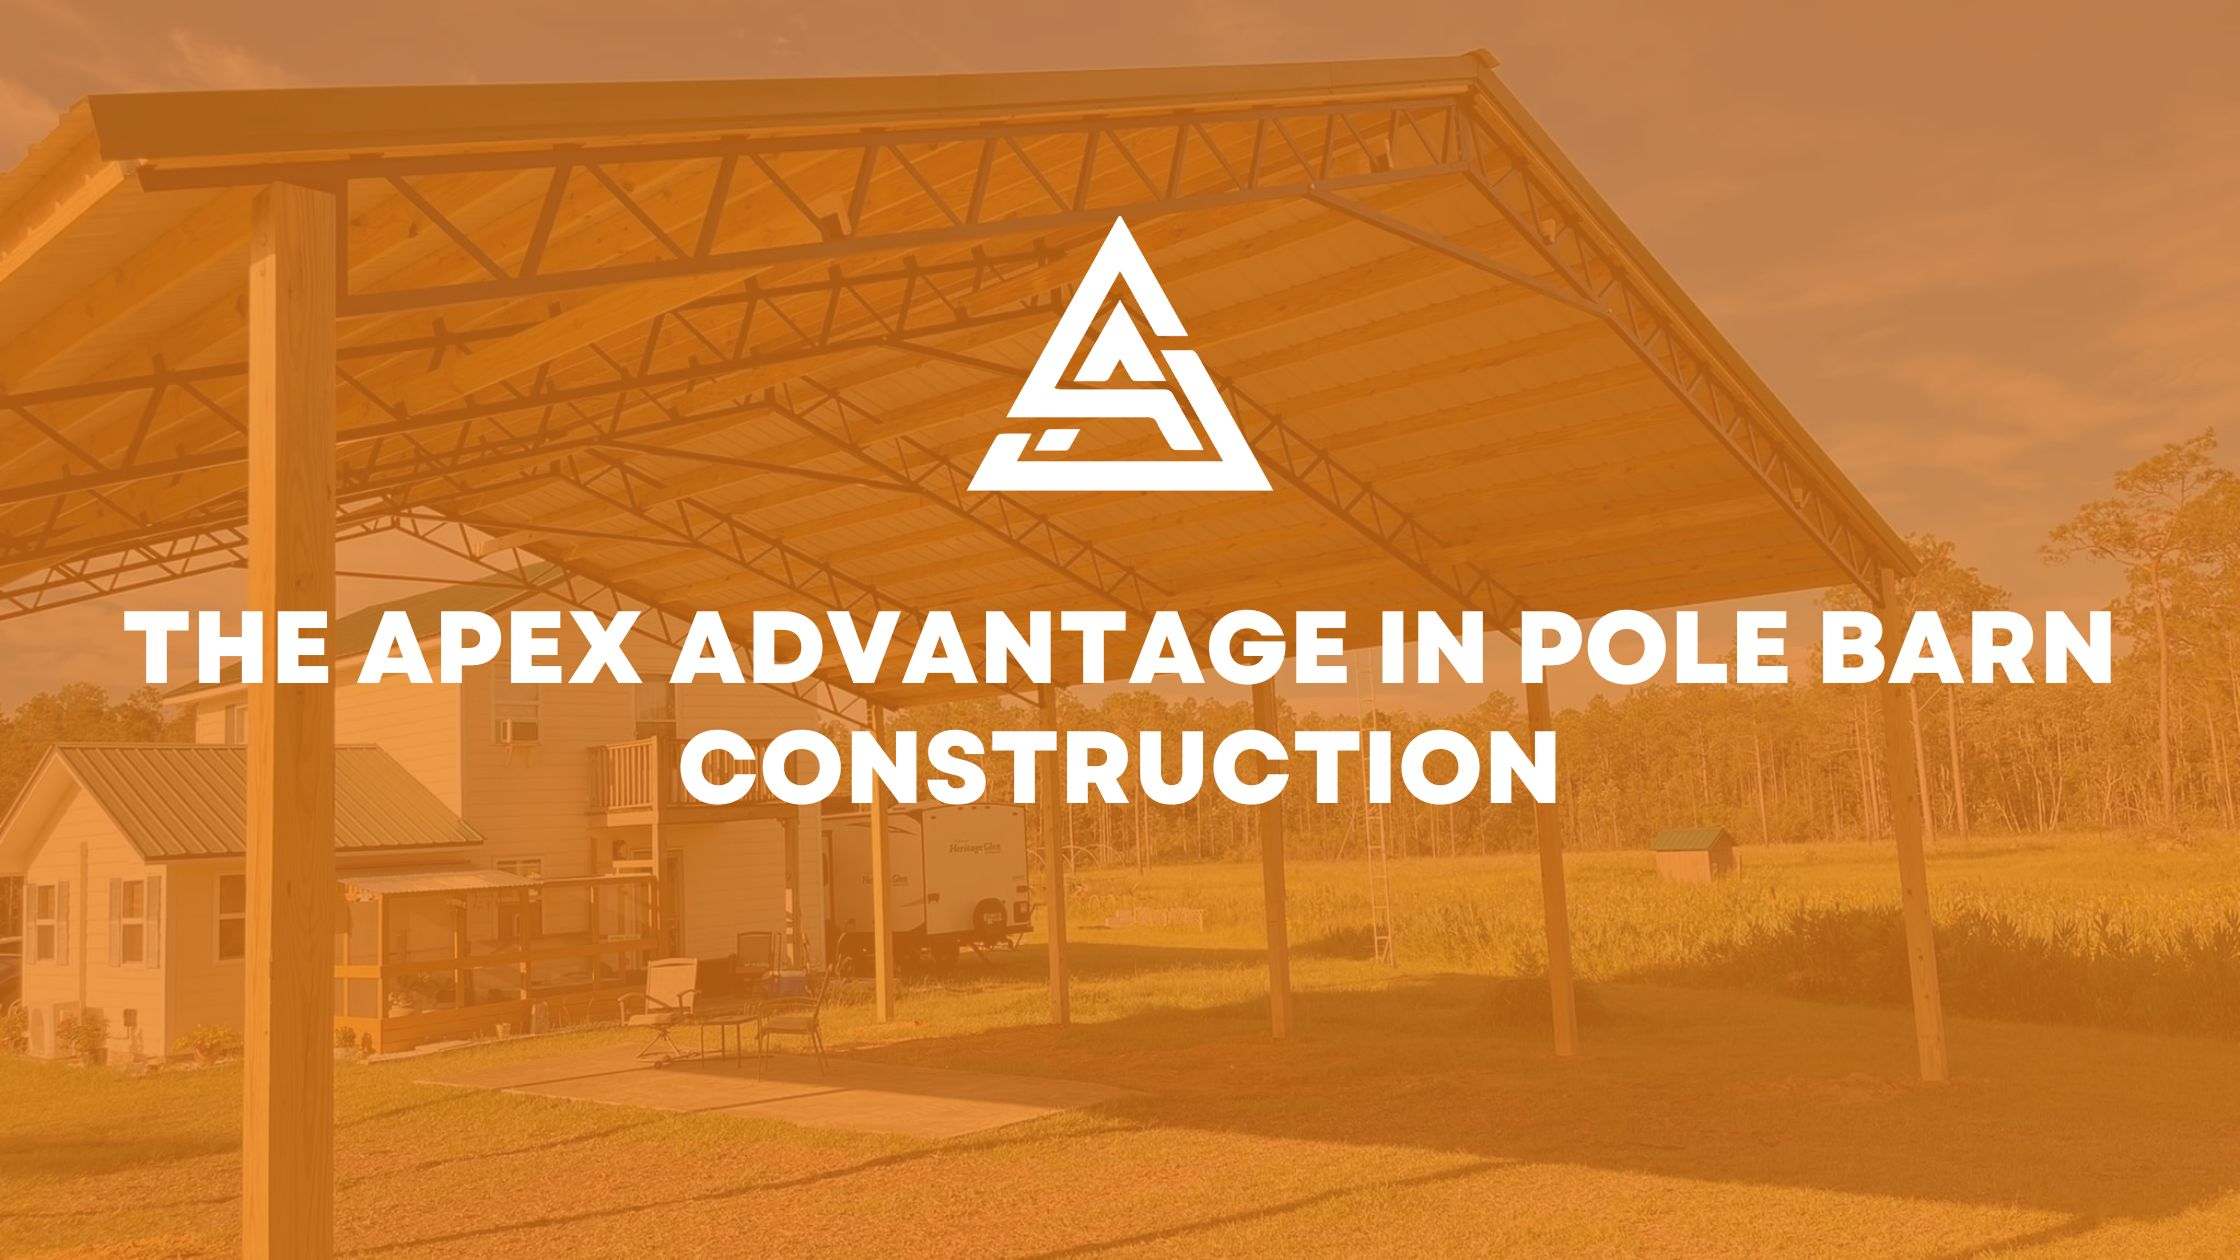 The Apex Advantage in Pole Barn Construction